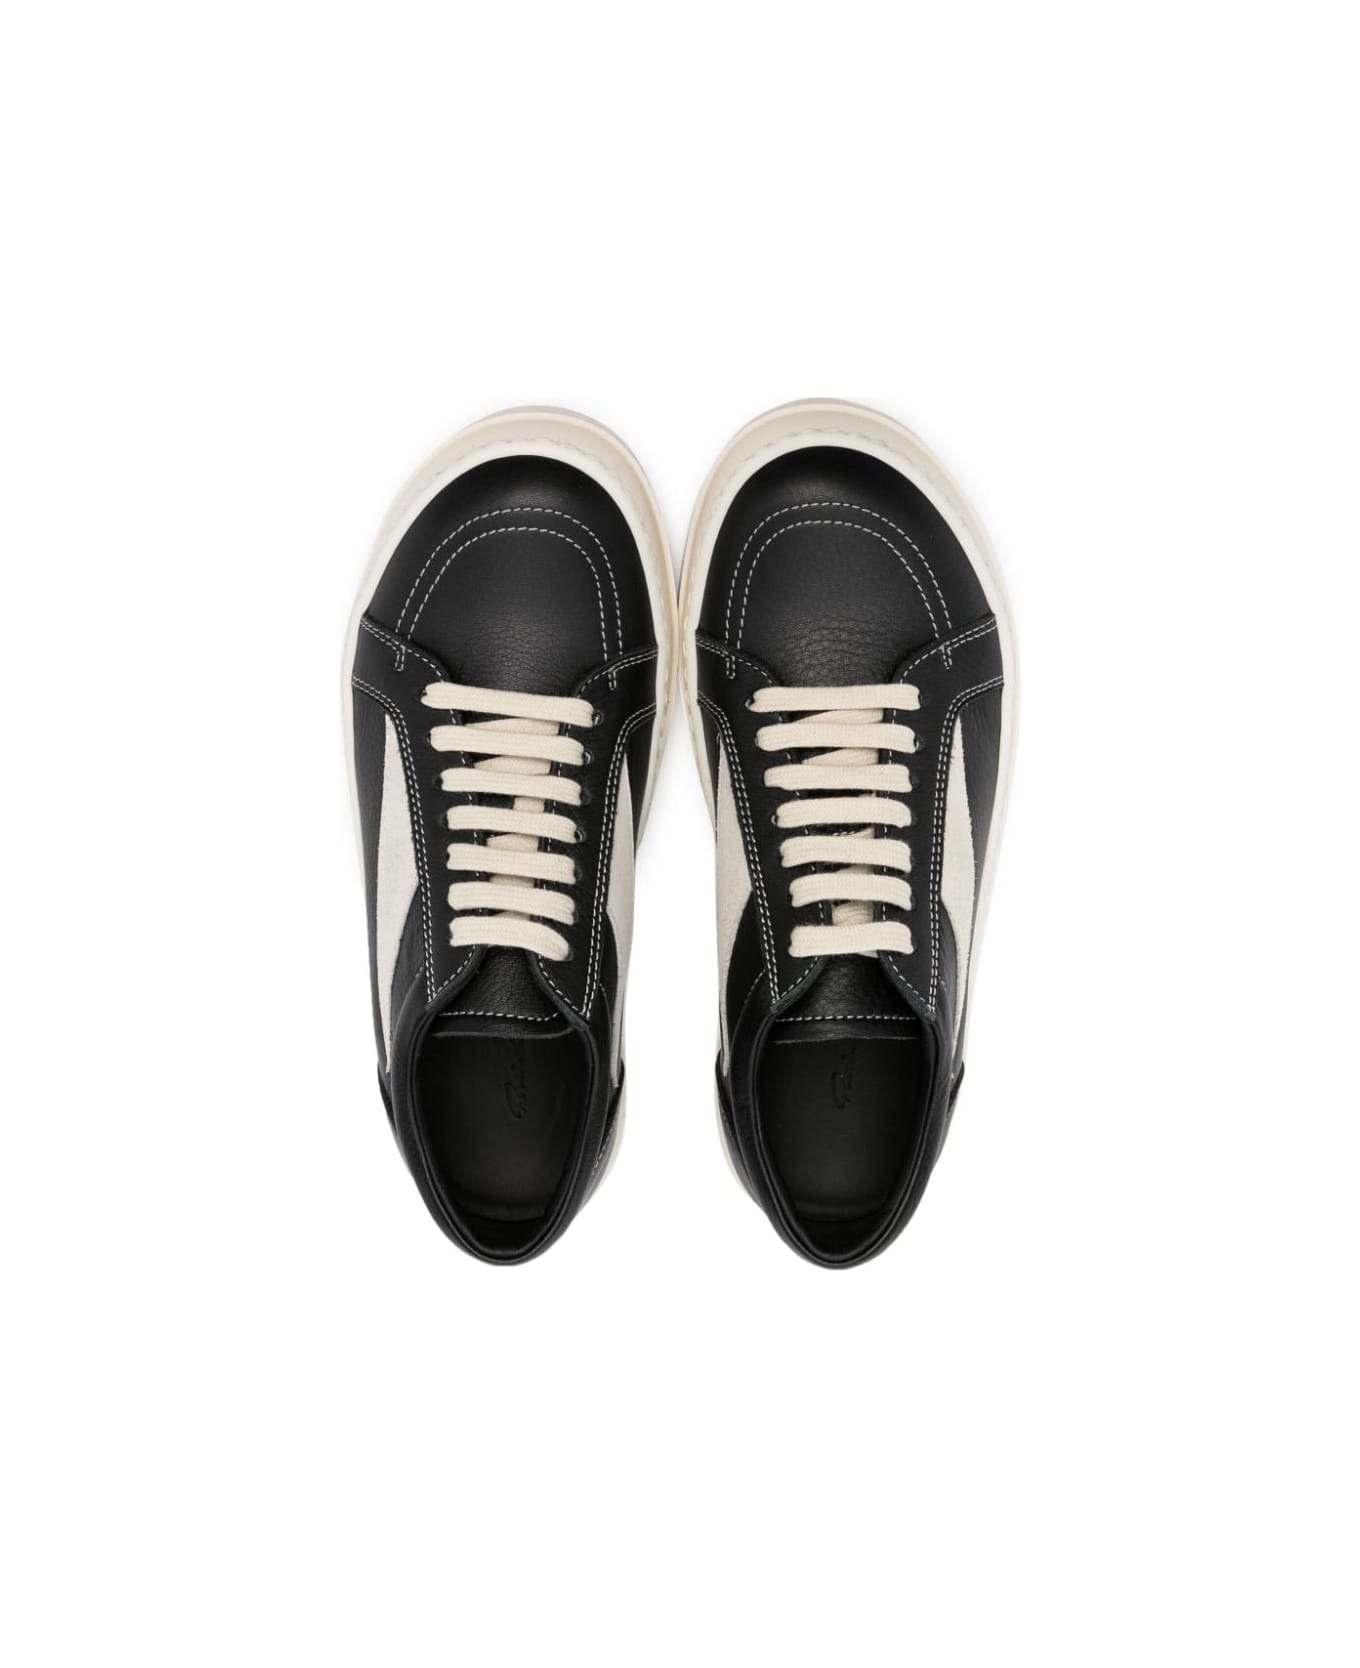 Rick Owens Leather Vintage Sneakers - Black Pearl Milk